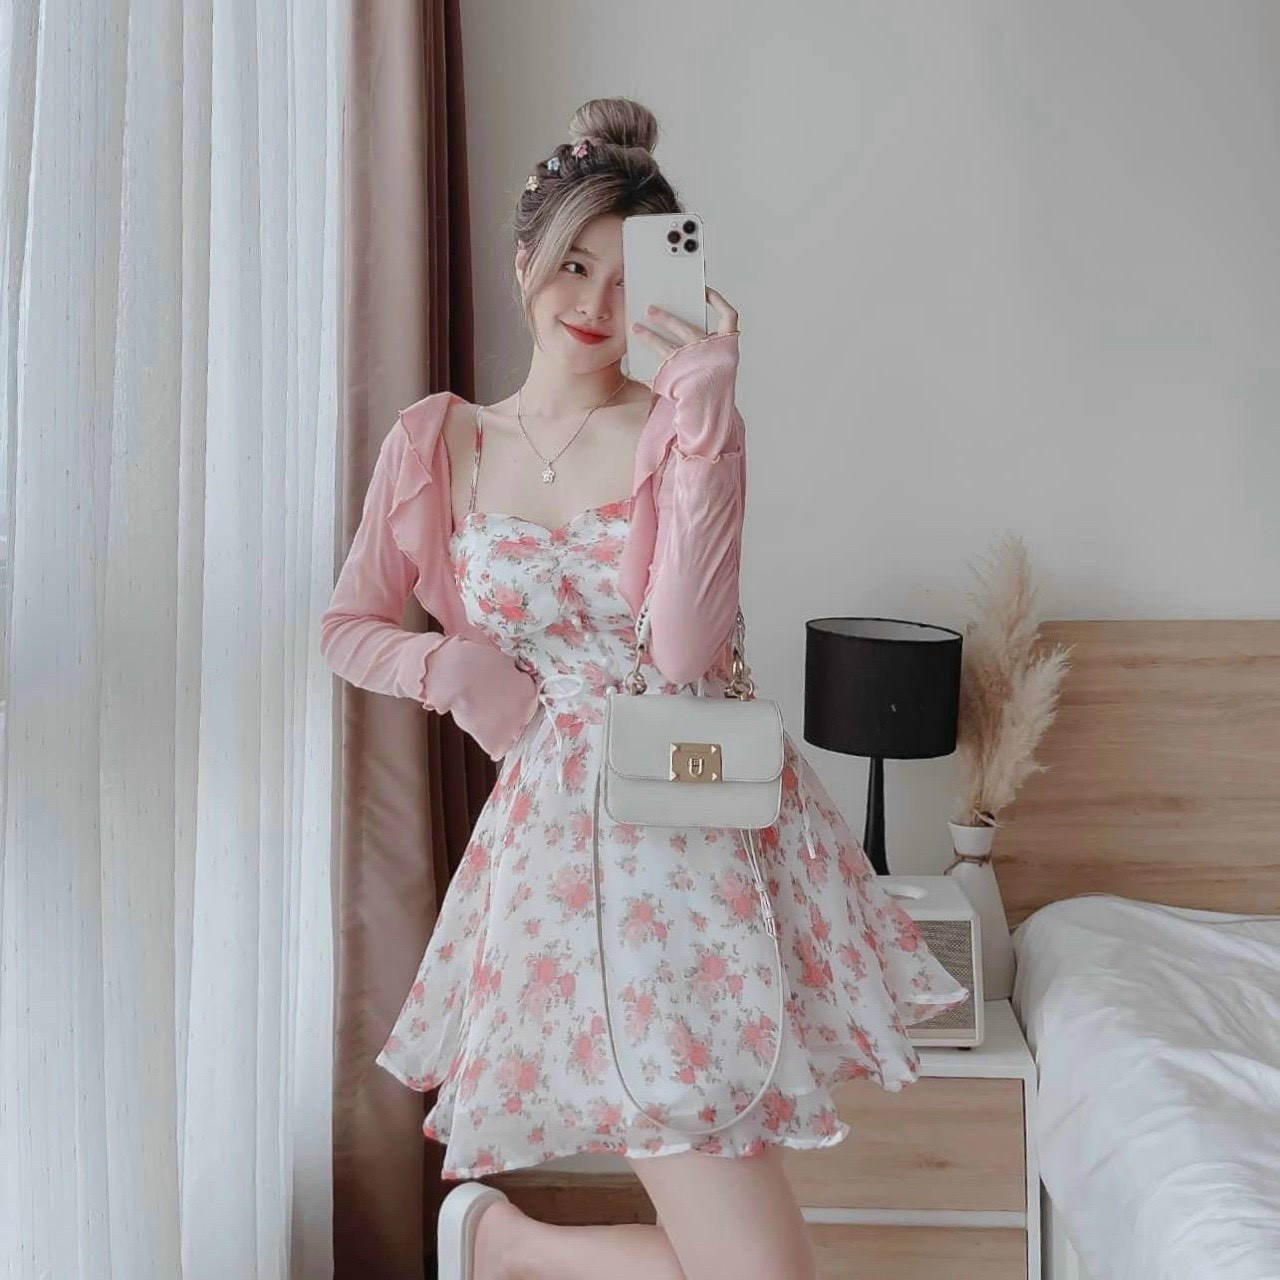 Set bộ đồ nữ họa tiết xinh xắn mix chân váy form dài siêu cute với tone màu  hồng đơn giản, nhẹ nhàng siêu xinh | Shopee Việt Nam